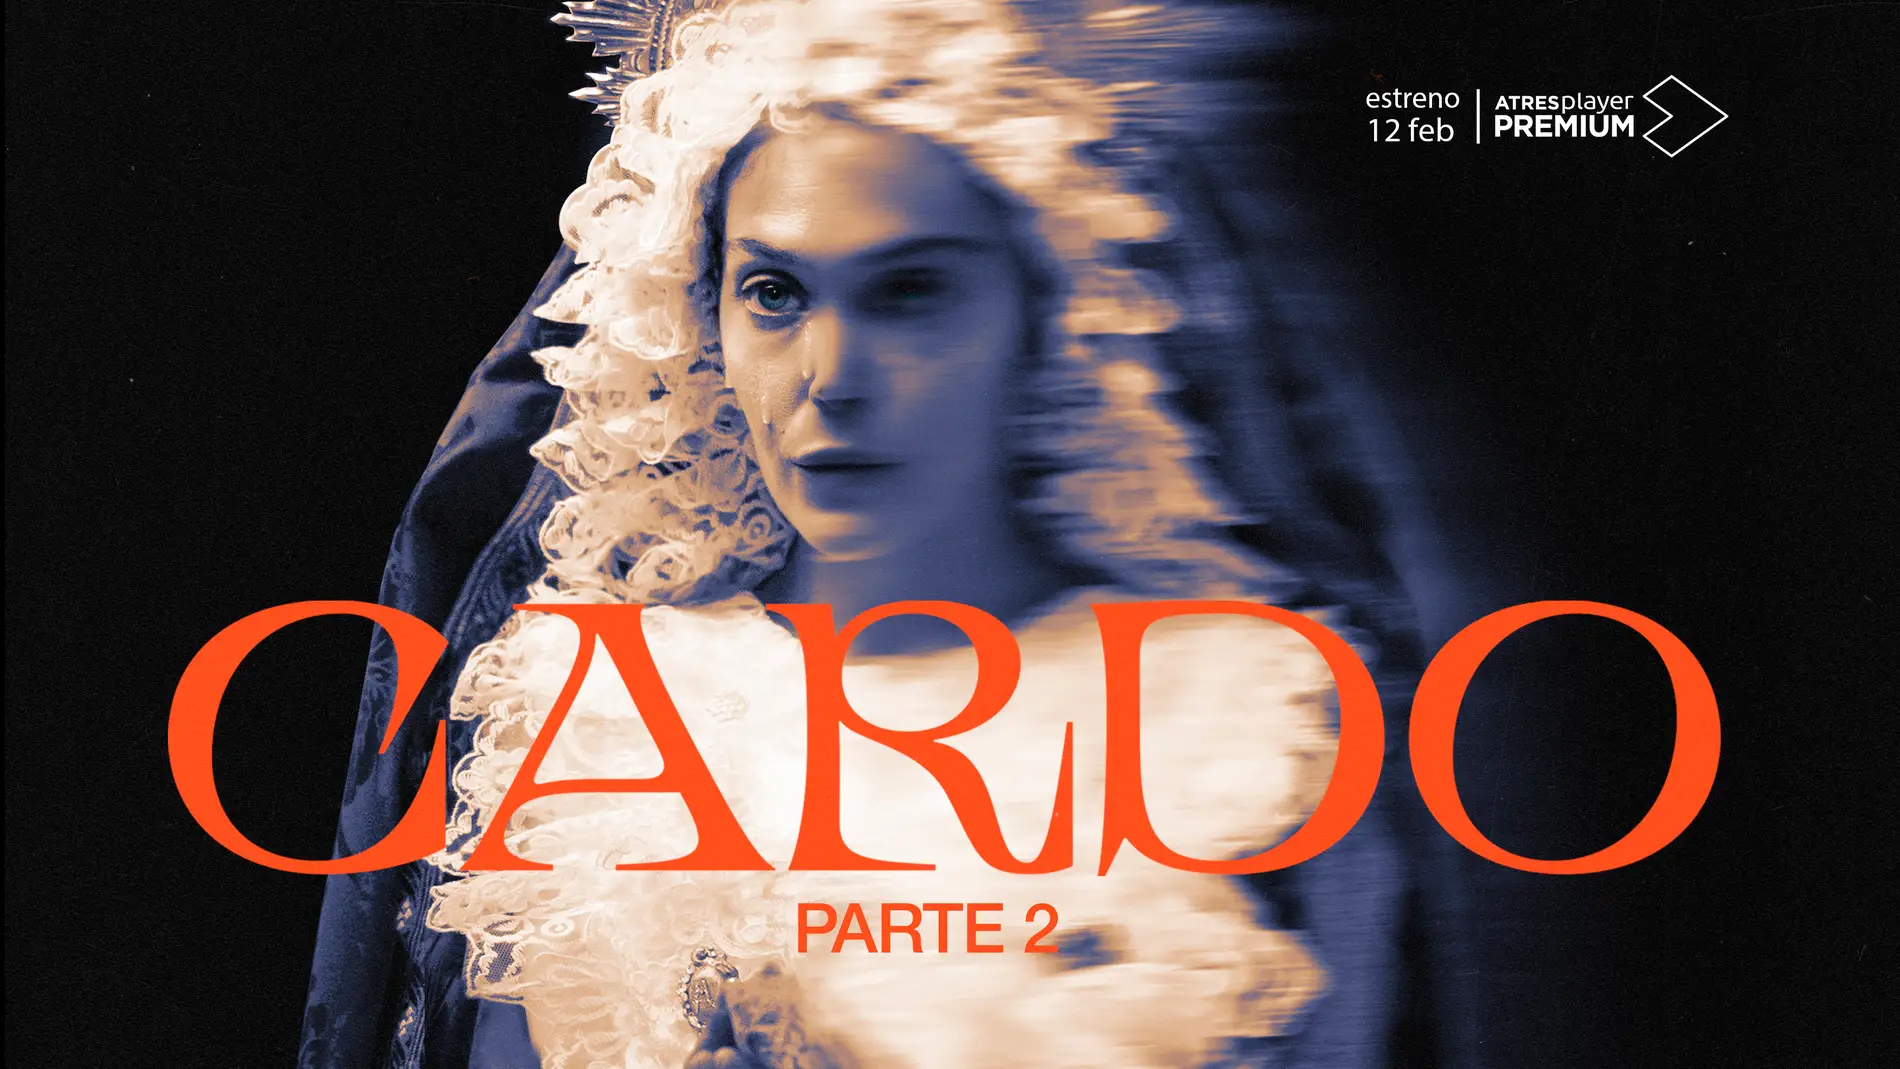 Cartel oficial de la segunda temporada de ‘Cardo’, que llega a ATRESplayer PREMIUM el próximo 12 de febrero